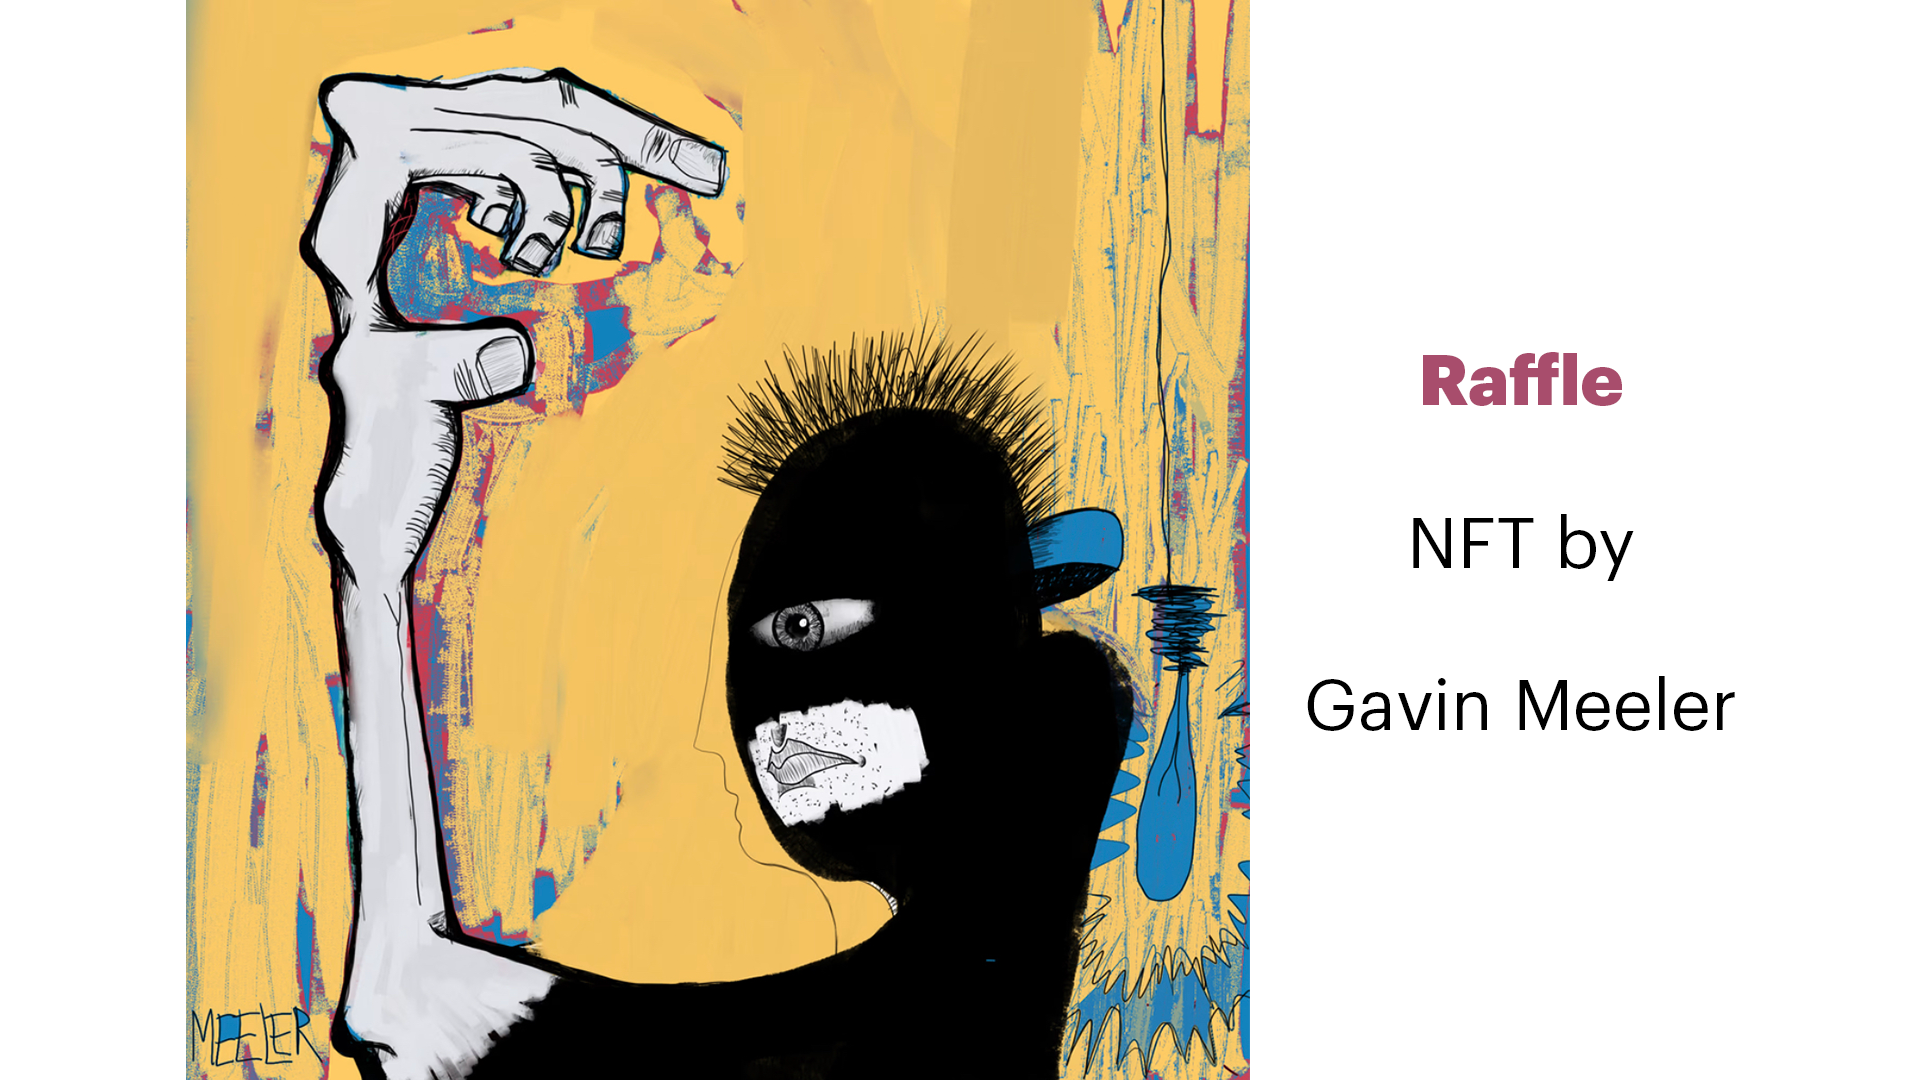 Raffle NFT by Gavin Meeler